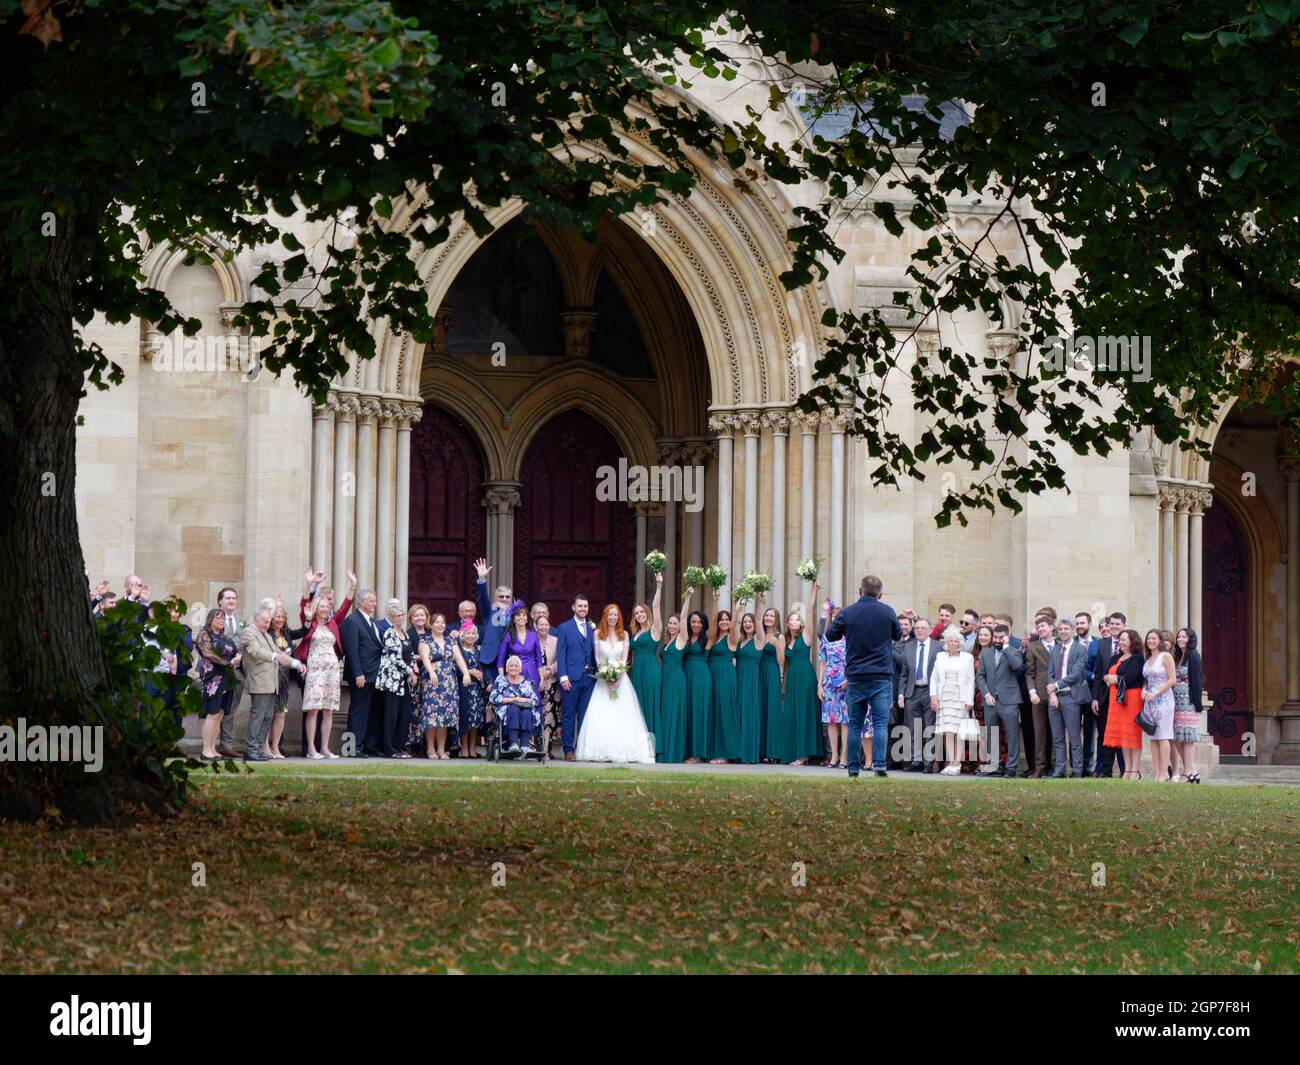 St Albans, Hertfordshire, England, September 21 2021: Herbstliche Hochzeit vor der Kathedrale, während die Brautjungfern Blumensträuße für ein Pho in der Luft halten Stockfoto